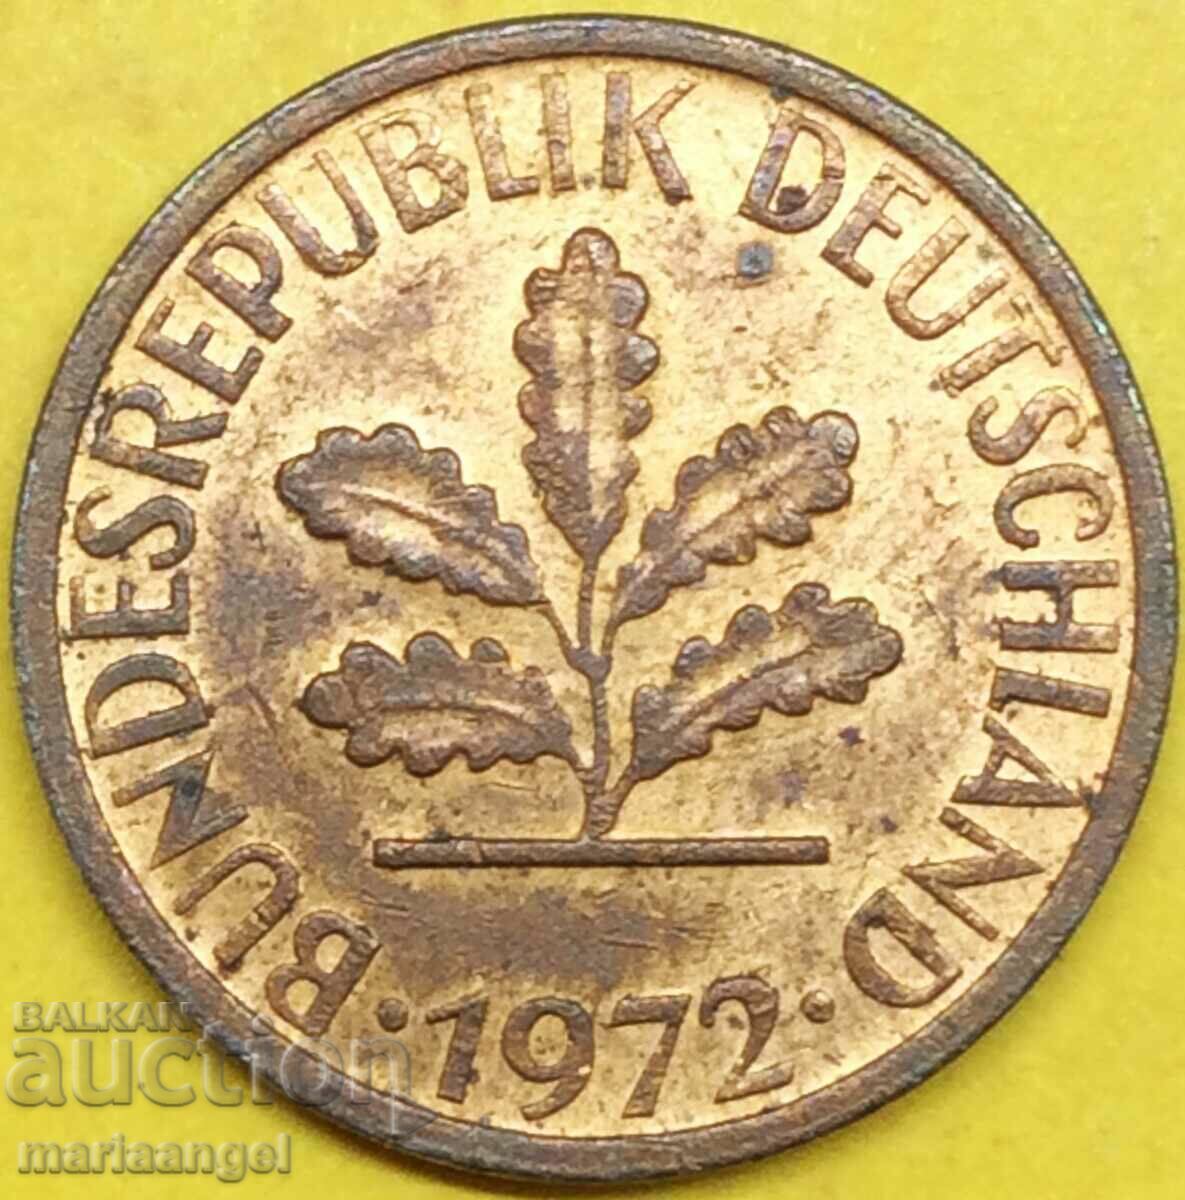 1 pfennig 1972 Germany D